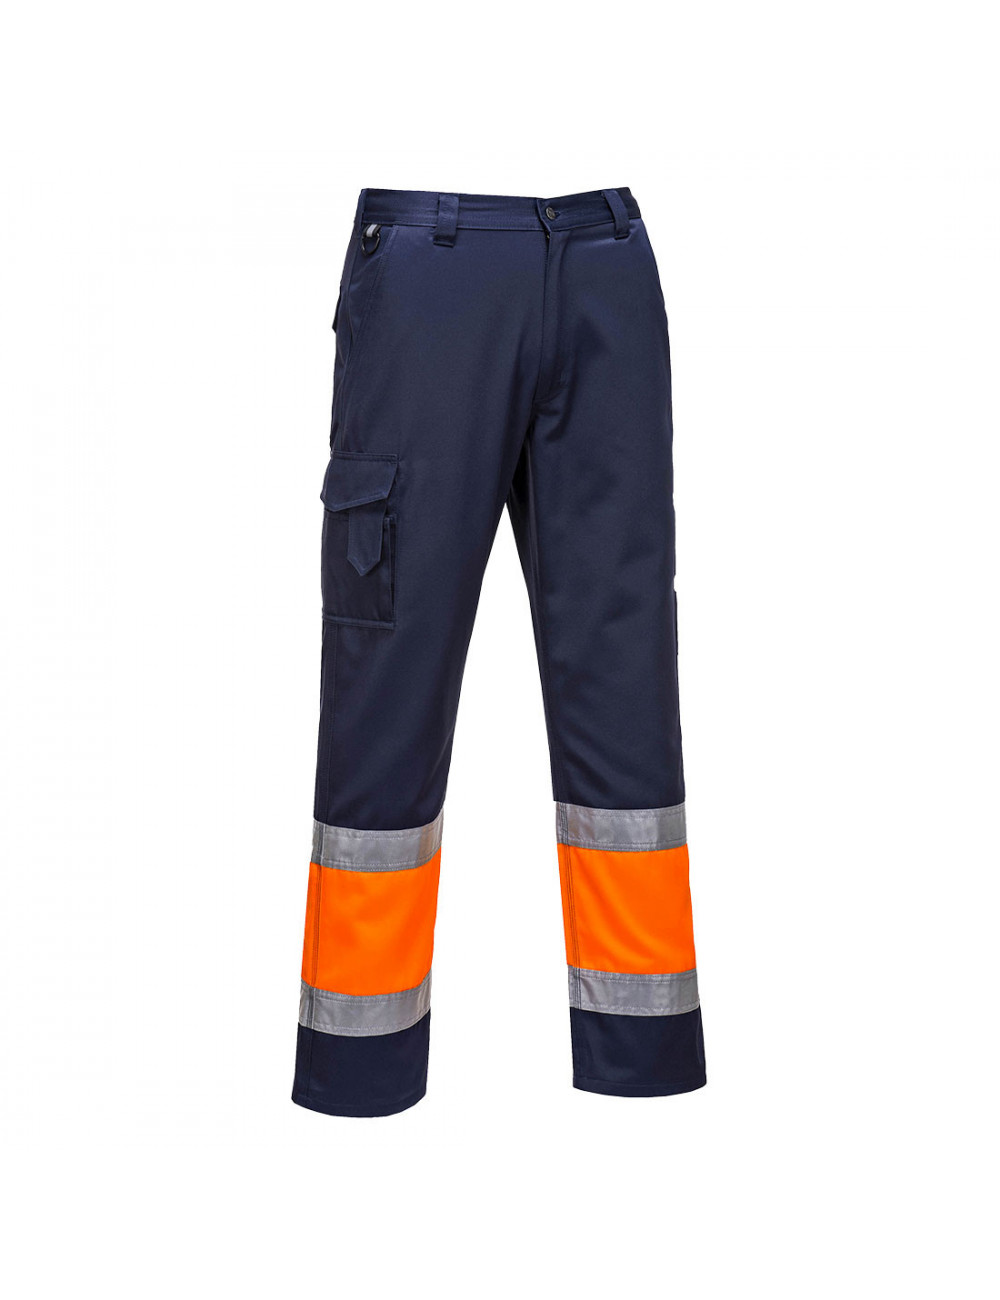 Spodnie bojówki dwukolorowe z elementem odblaskowym pomarańczowo/granatowy Portwest